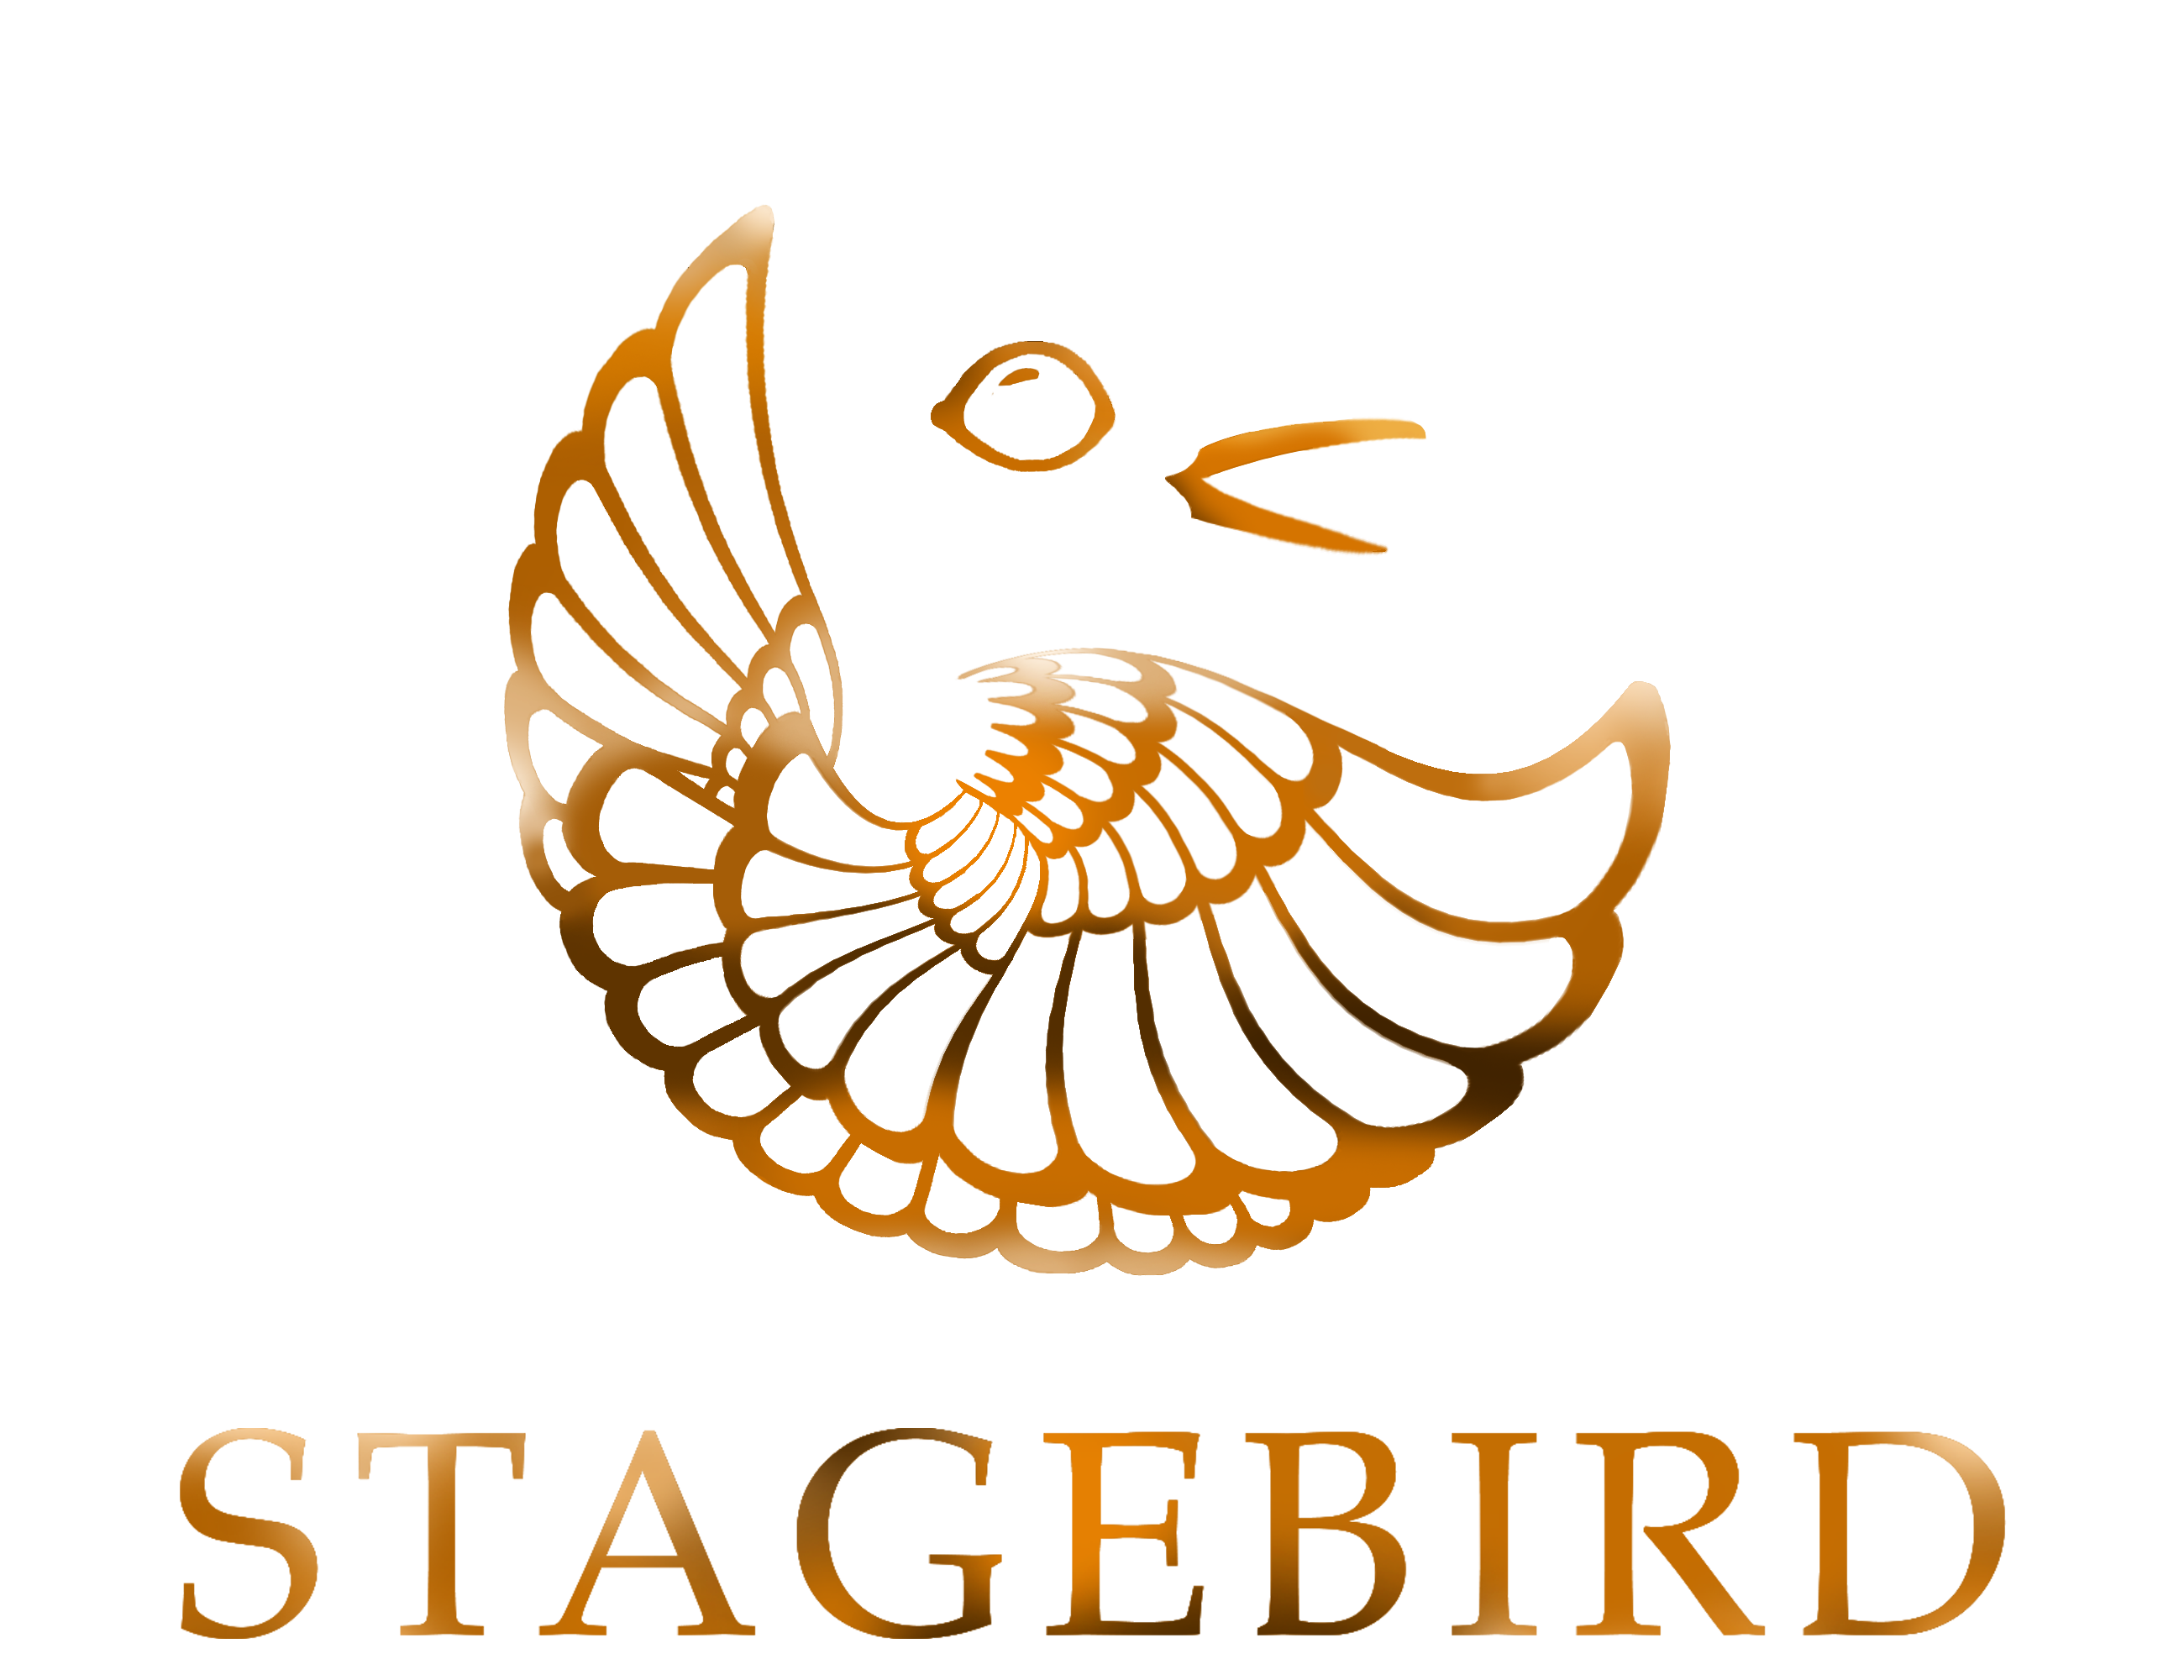 Stagebird